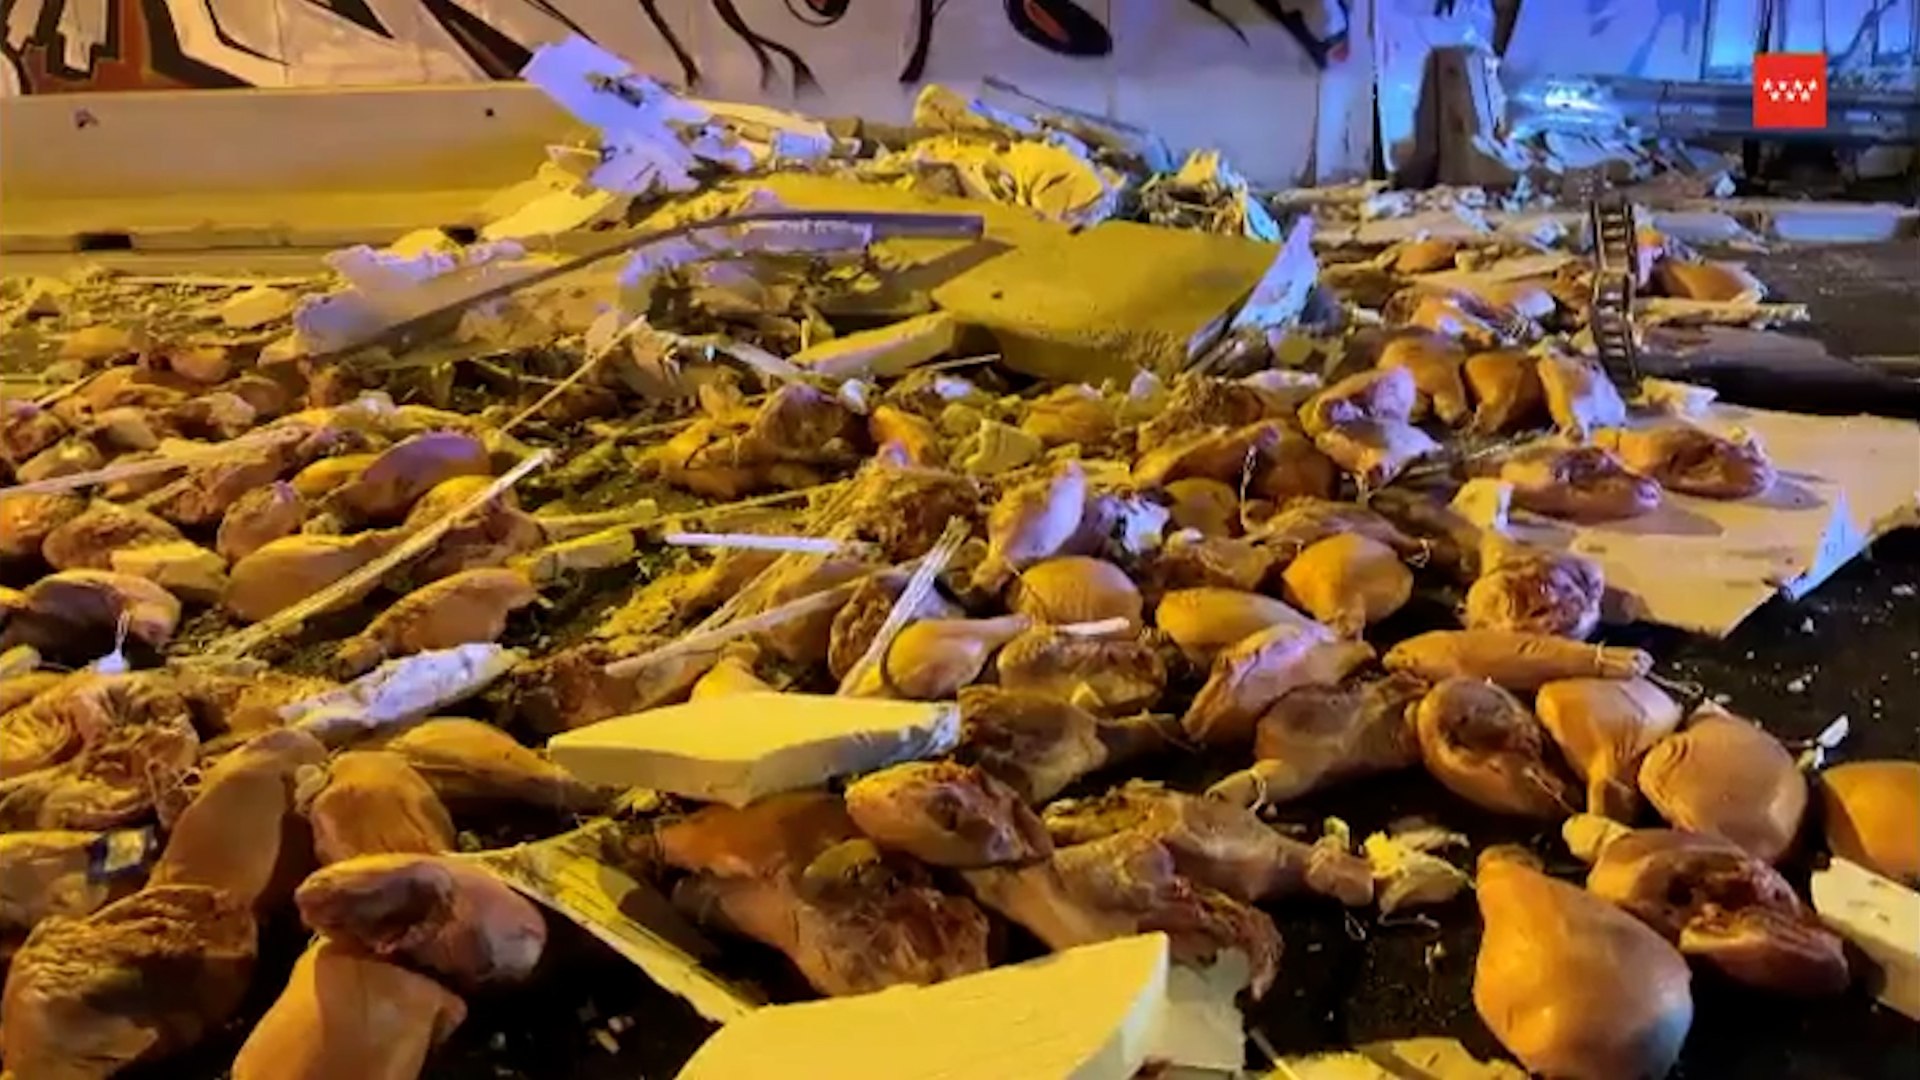 Un camin vuelca en Madrid esparciendo 30 toneladas de jamones por la carretera